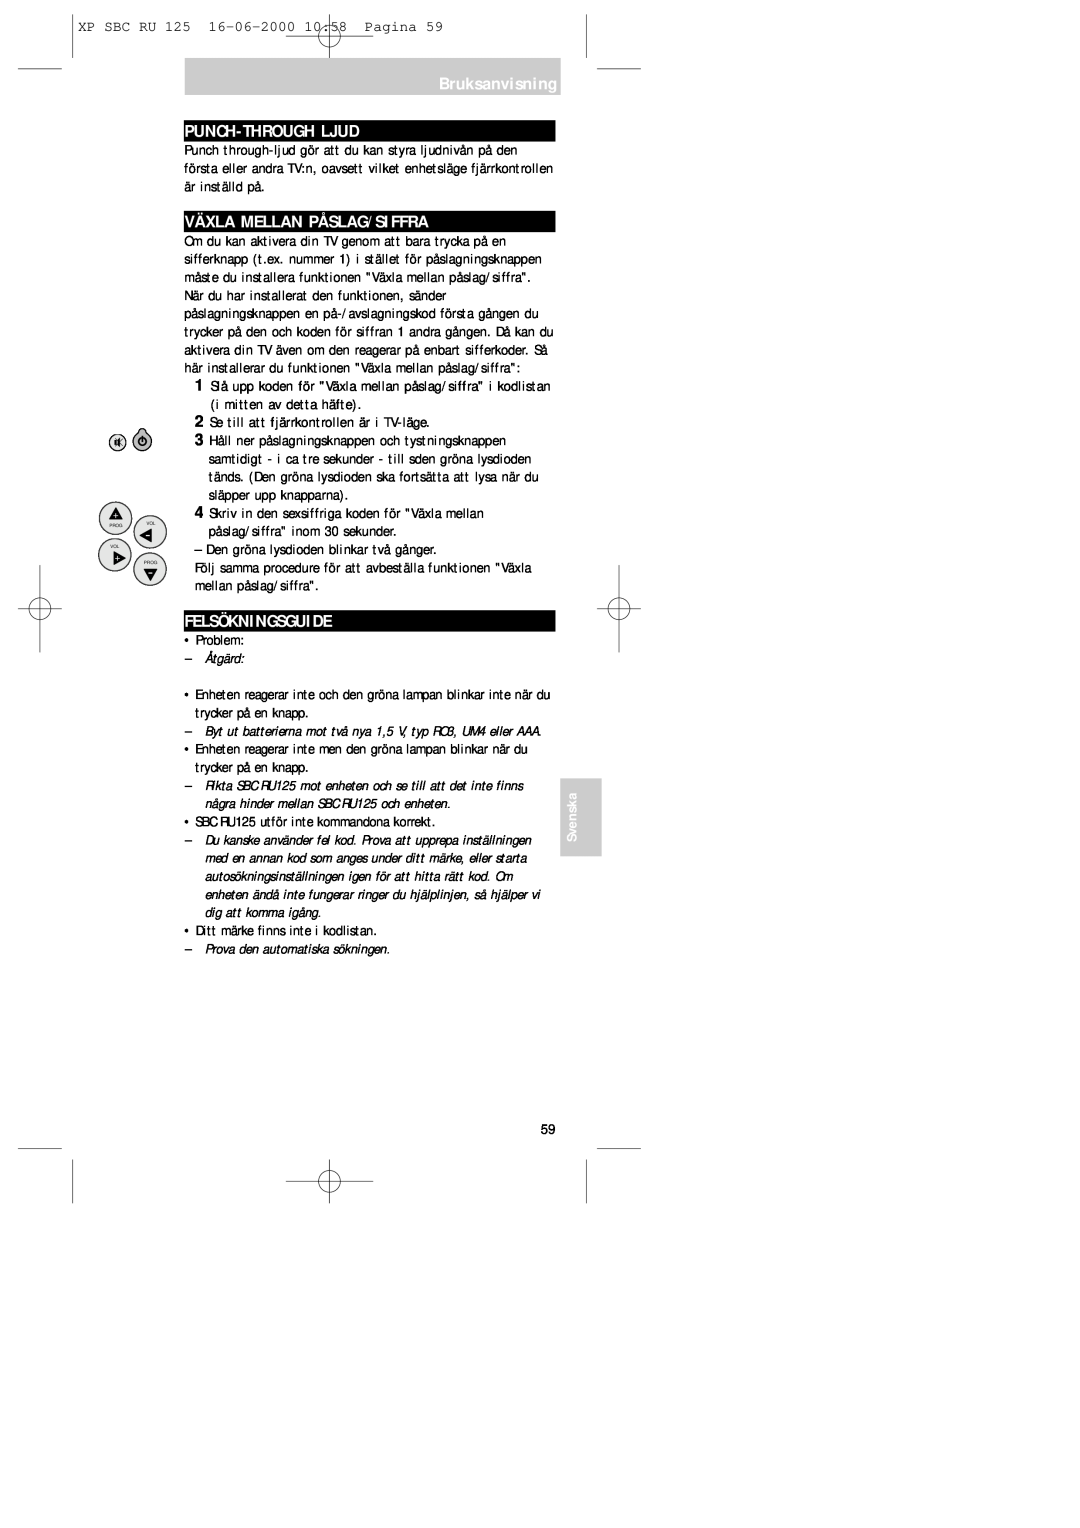 Philips RU125 manual Bruksanvisning PUNCH-THROUGHLJUD, Växla Mellan Påslag/Siffra, Felsökningsguide, Svenska 